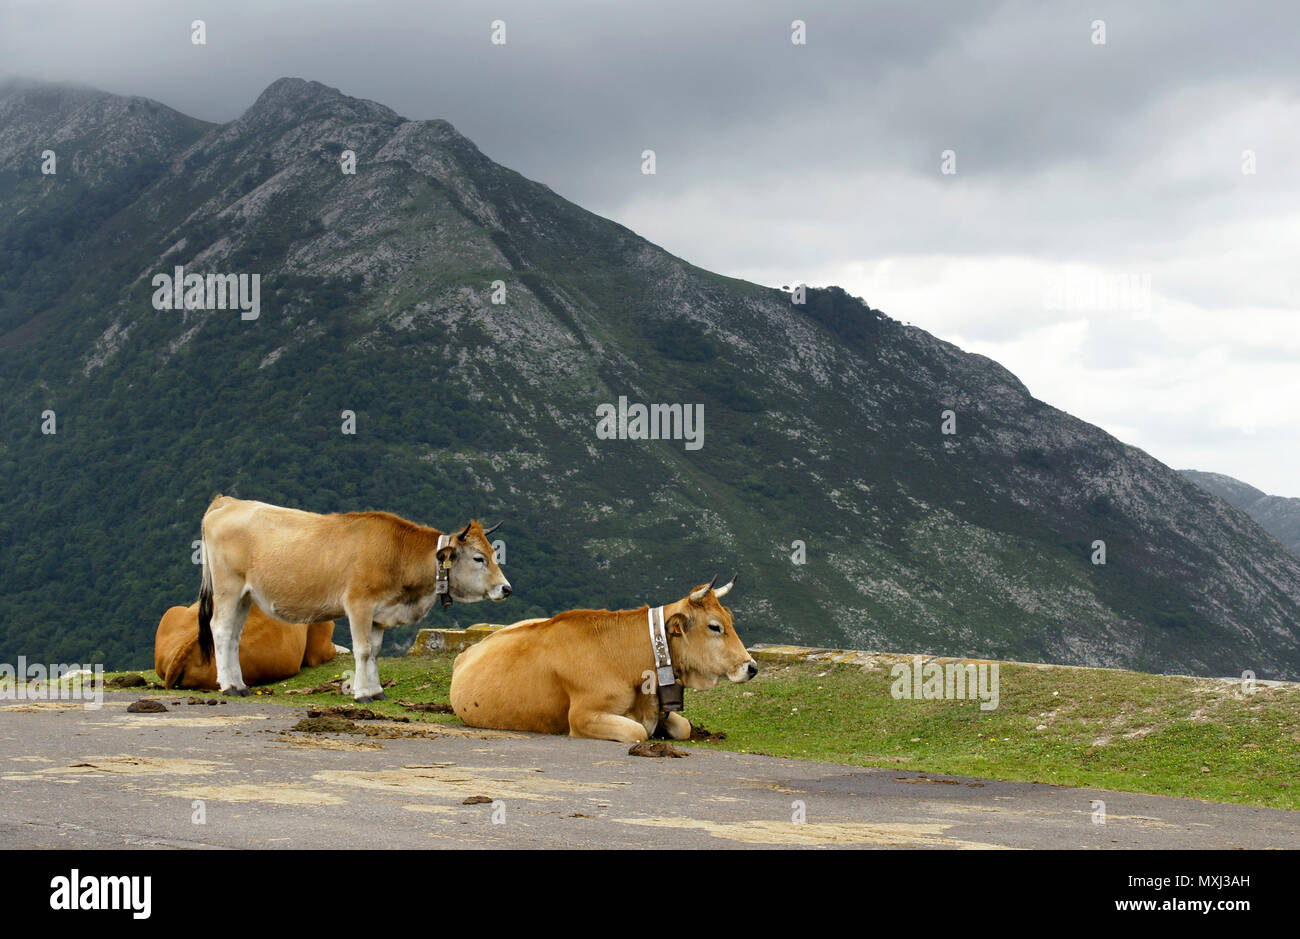 Vaca en el mirador del Pico Pienzu en Asturias. España Stock Photo